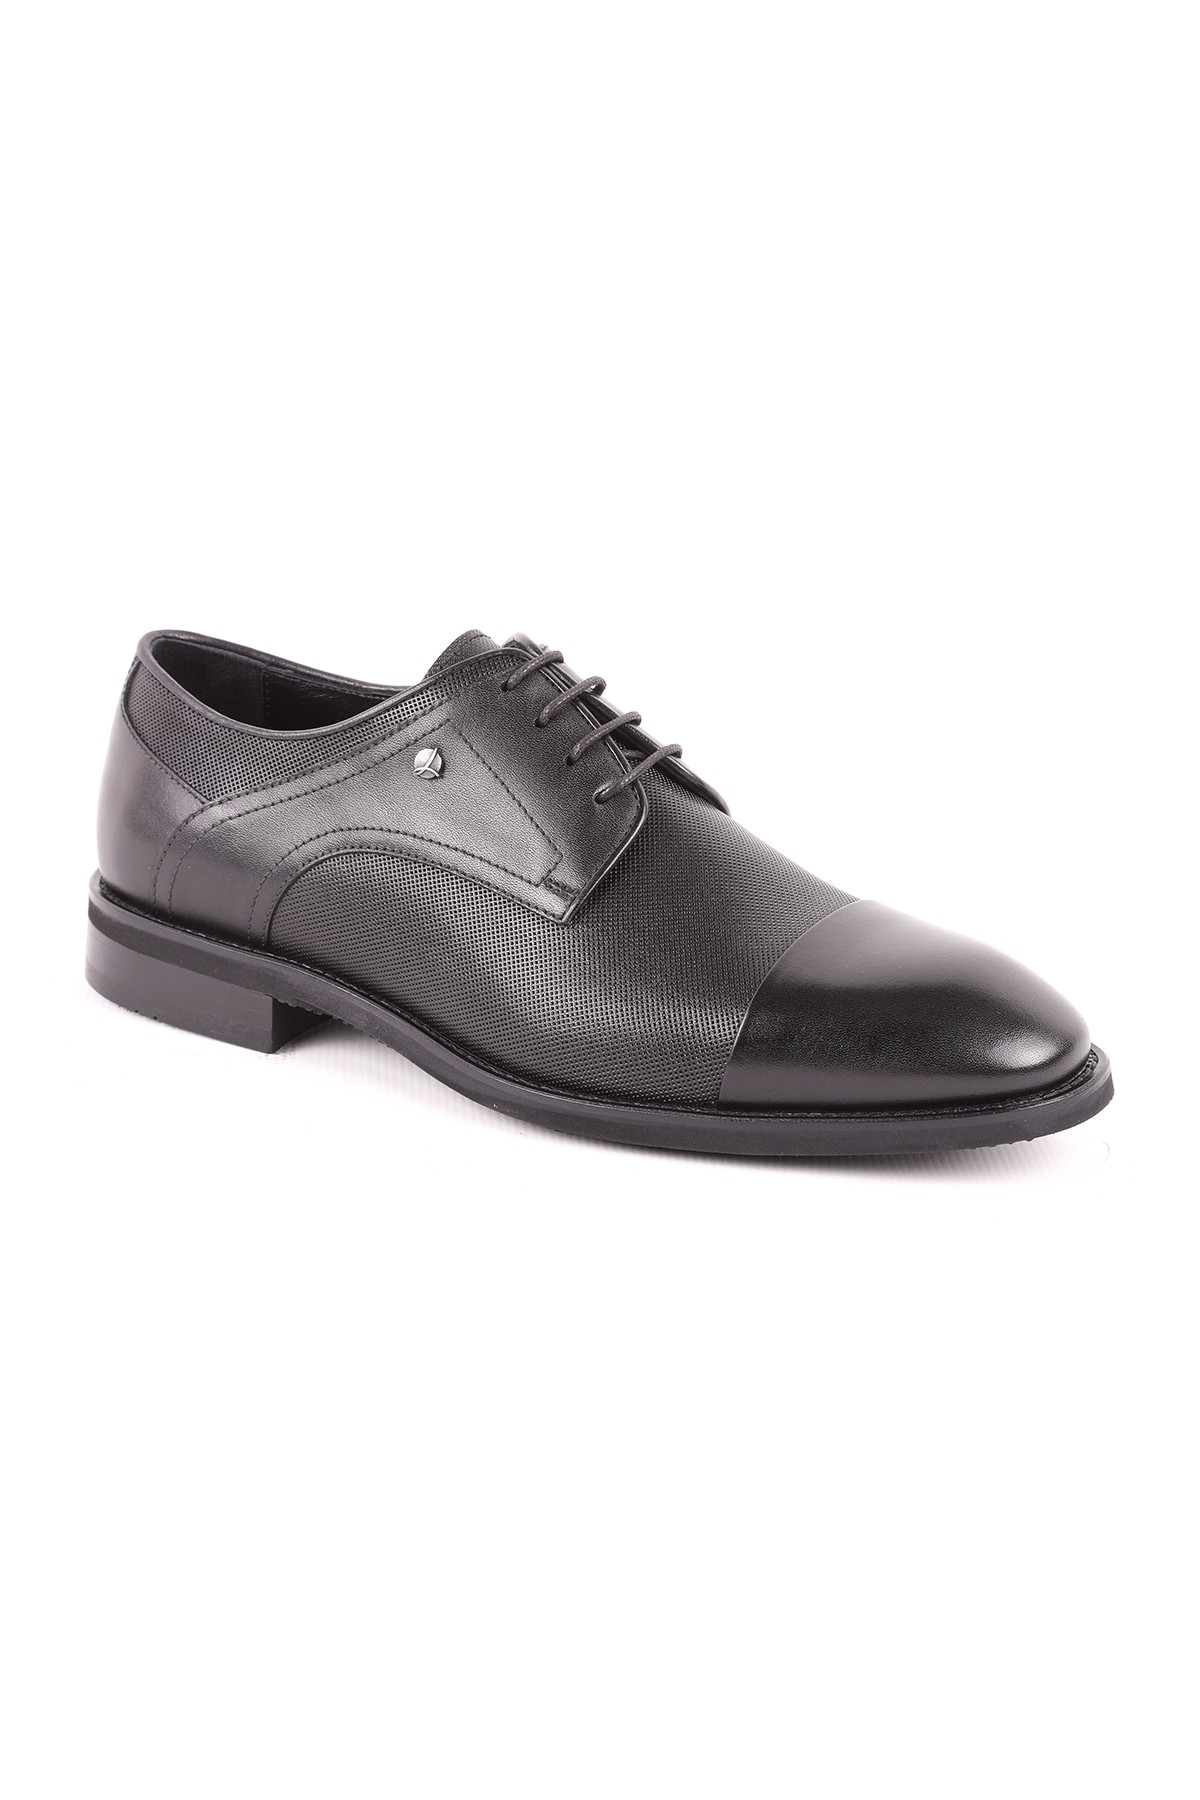 Libero L5182 Deri Erkek Klasik Ayakkabı CEVİZ - Siyah